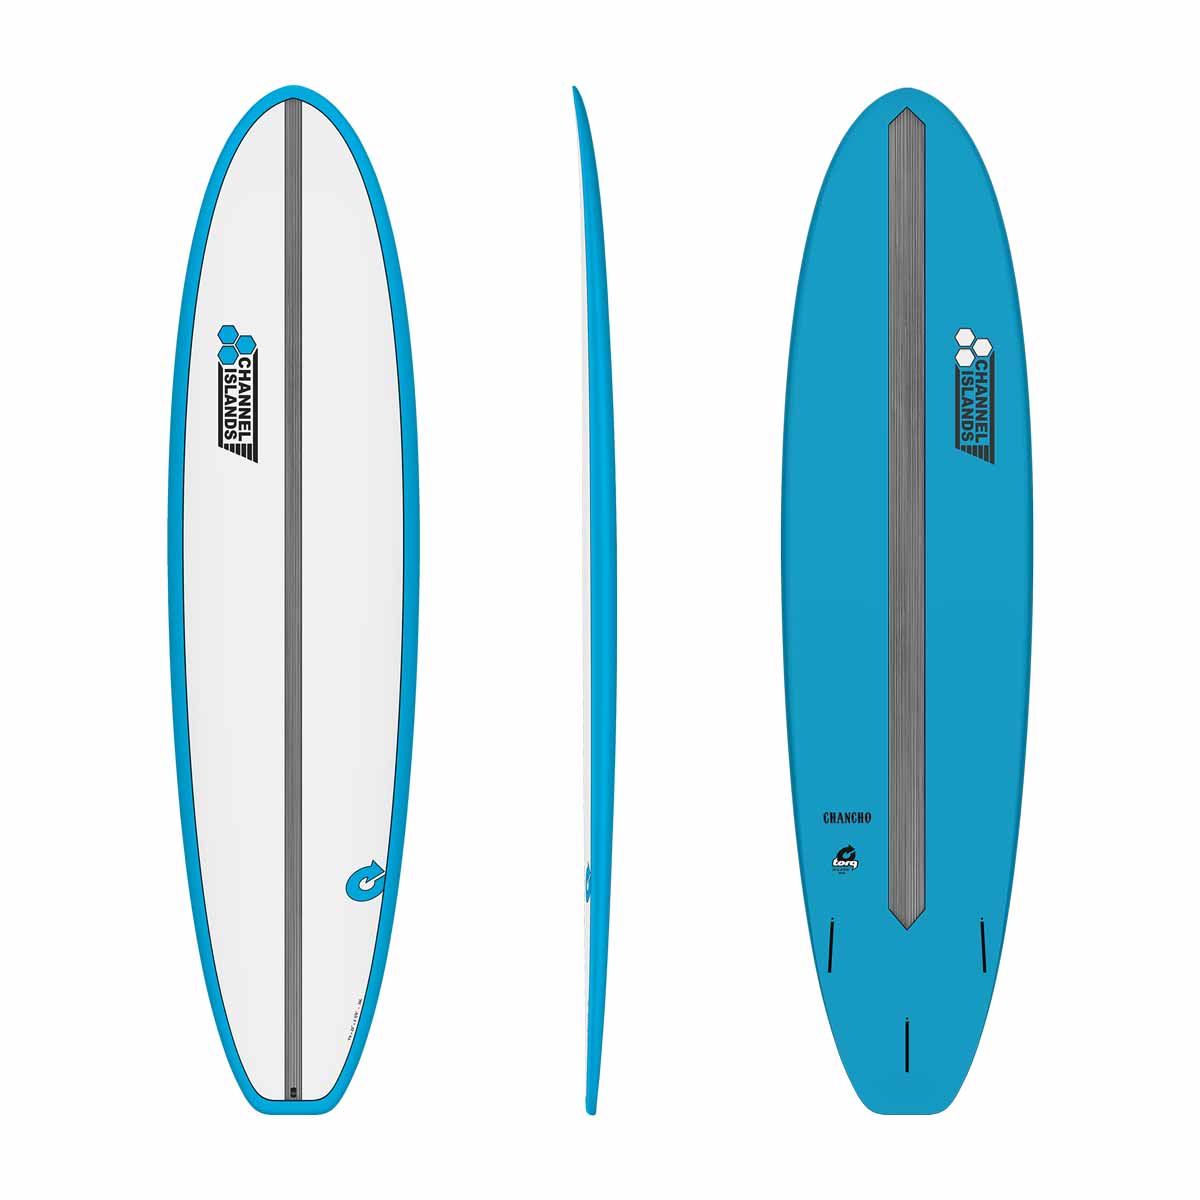 Channel Islands X-lite Chancho Surfboard – 7'0 / 7'6 / 8'0